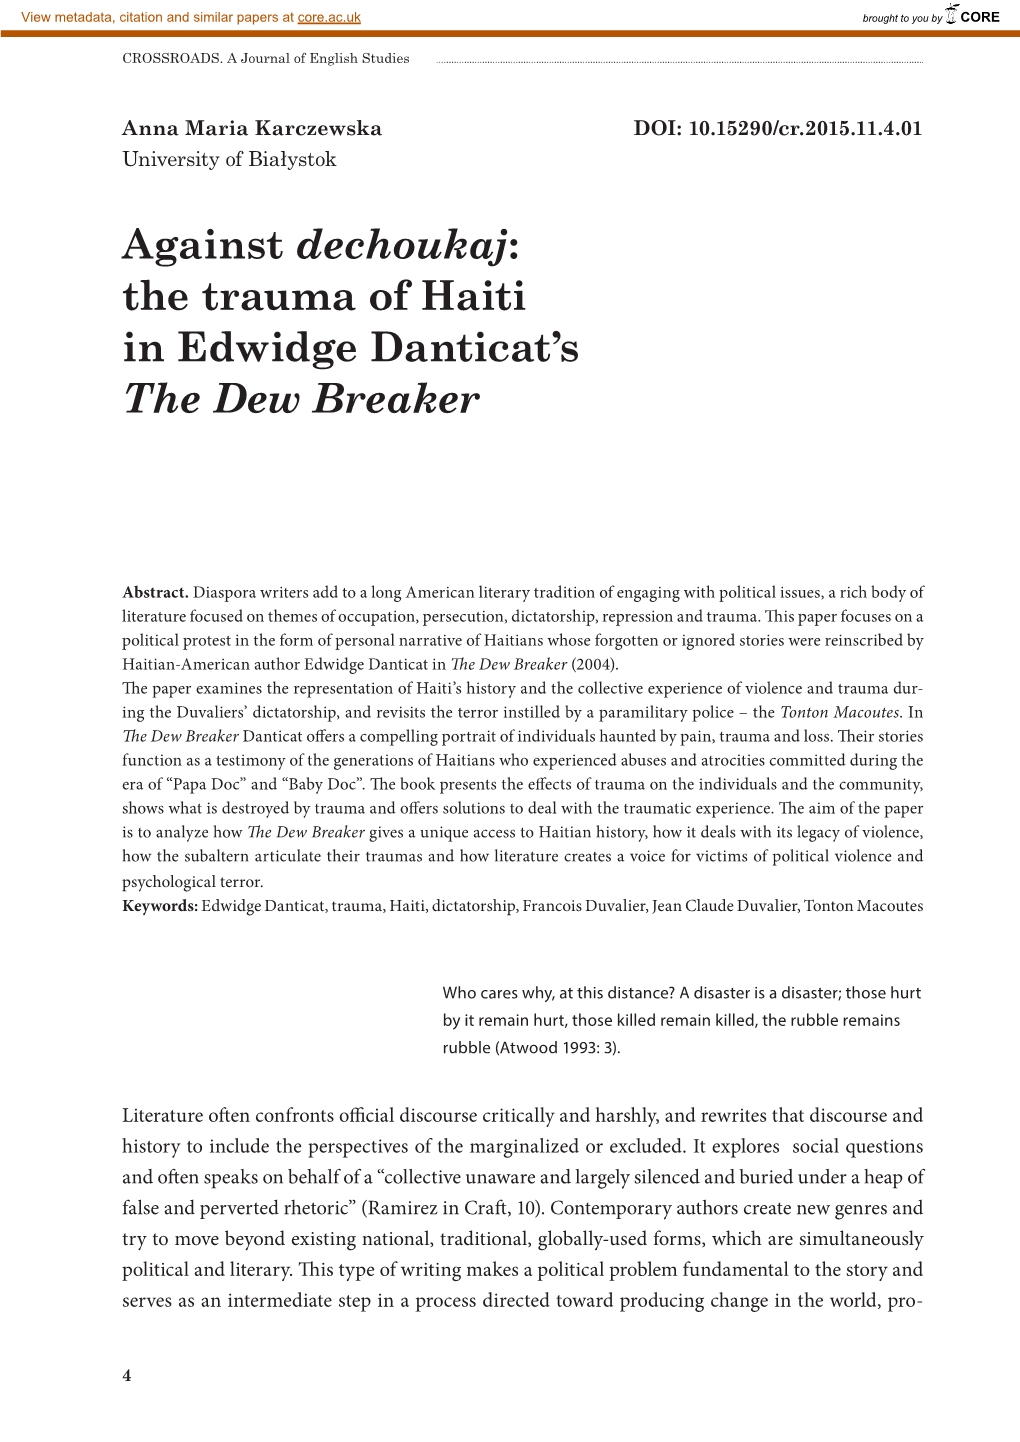 Against Dechoukaj: the Trauma of Haiti in Edwidge Danticat's the Dew